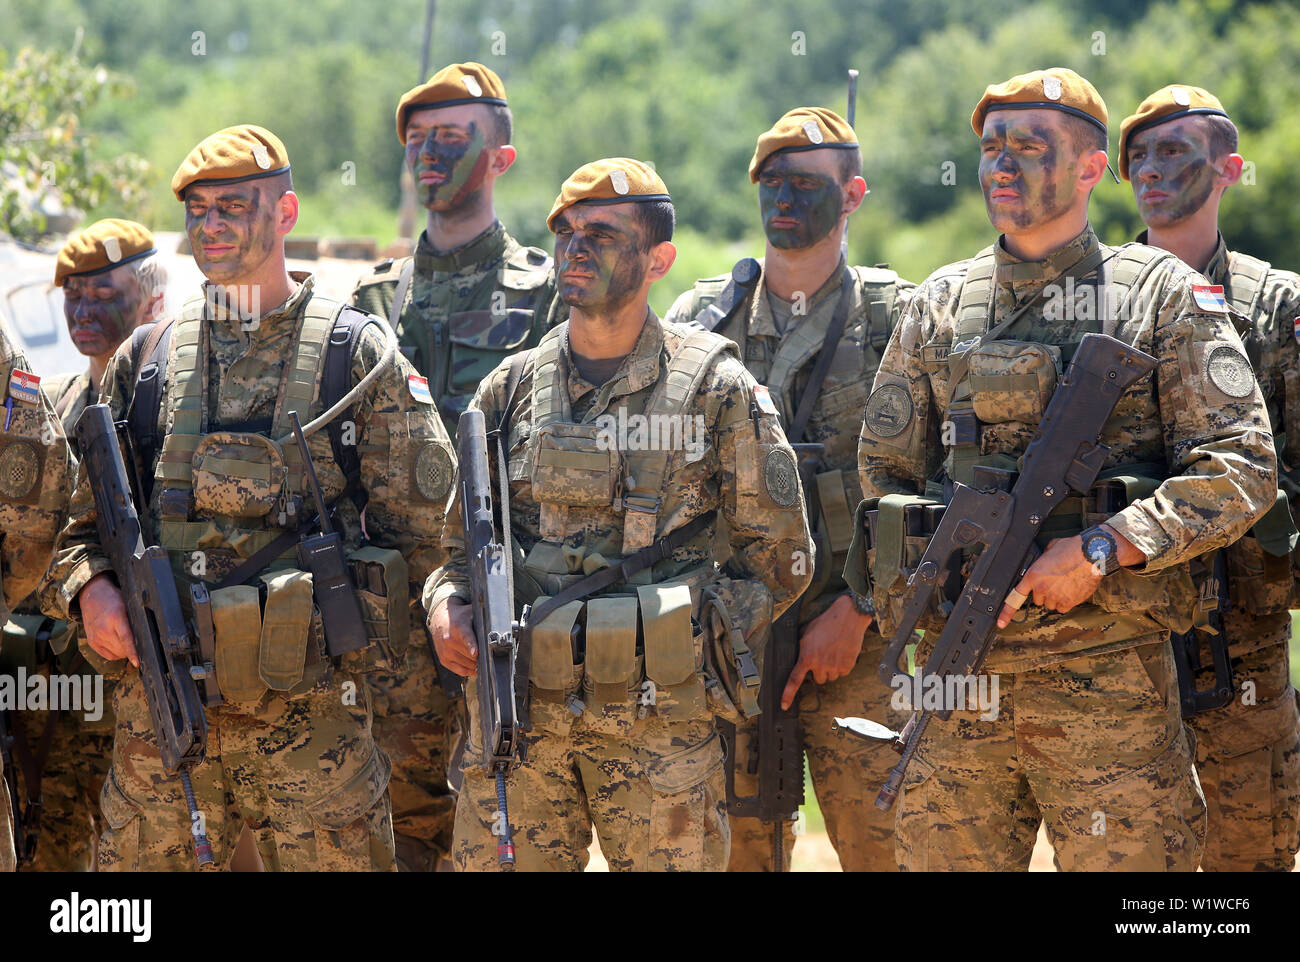 Slunj, Kroatien. 3. Juli 2019. Kroatische Soldaten beteiligen sich an der militärischen übung Puma 19 in Slunj, Kroatien, am 3. Juli 2019. Quelle: Kristina Stedul Fabac/Xinhua/Alamy leben Nachrichten Stockfoto